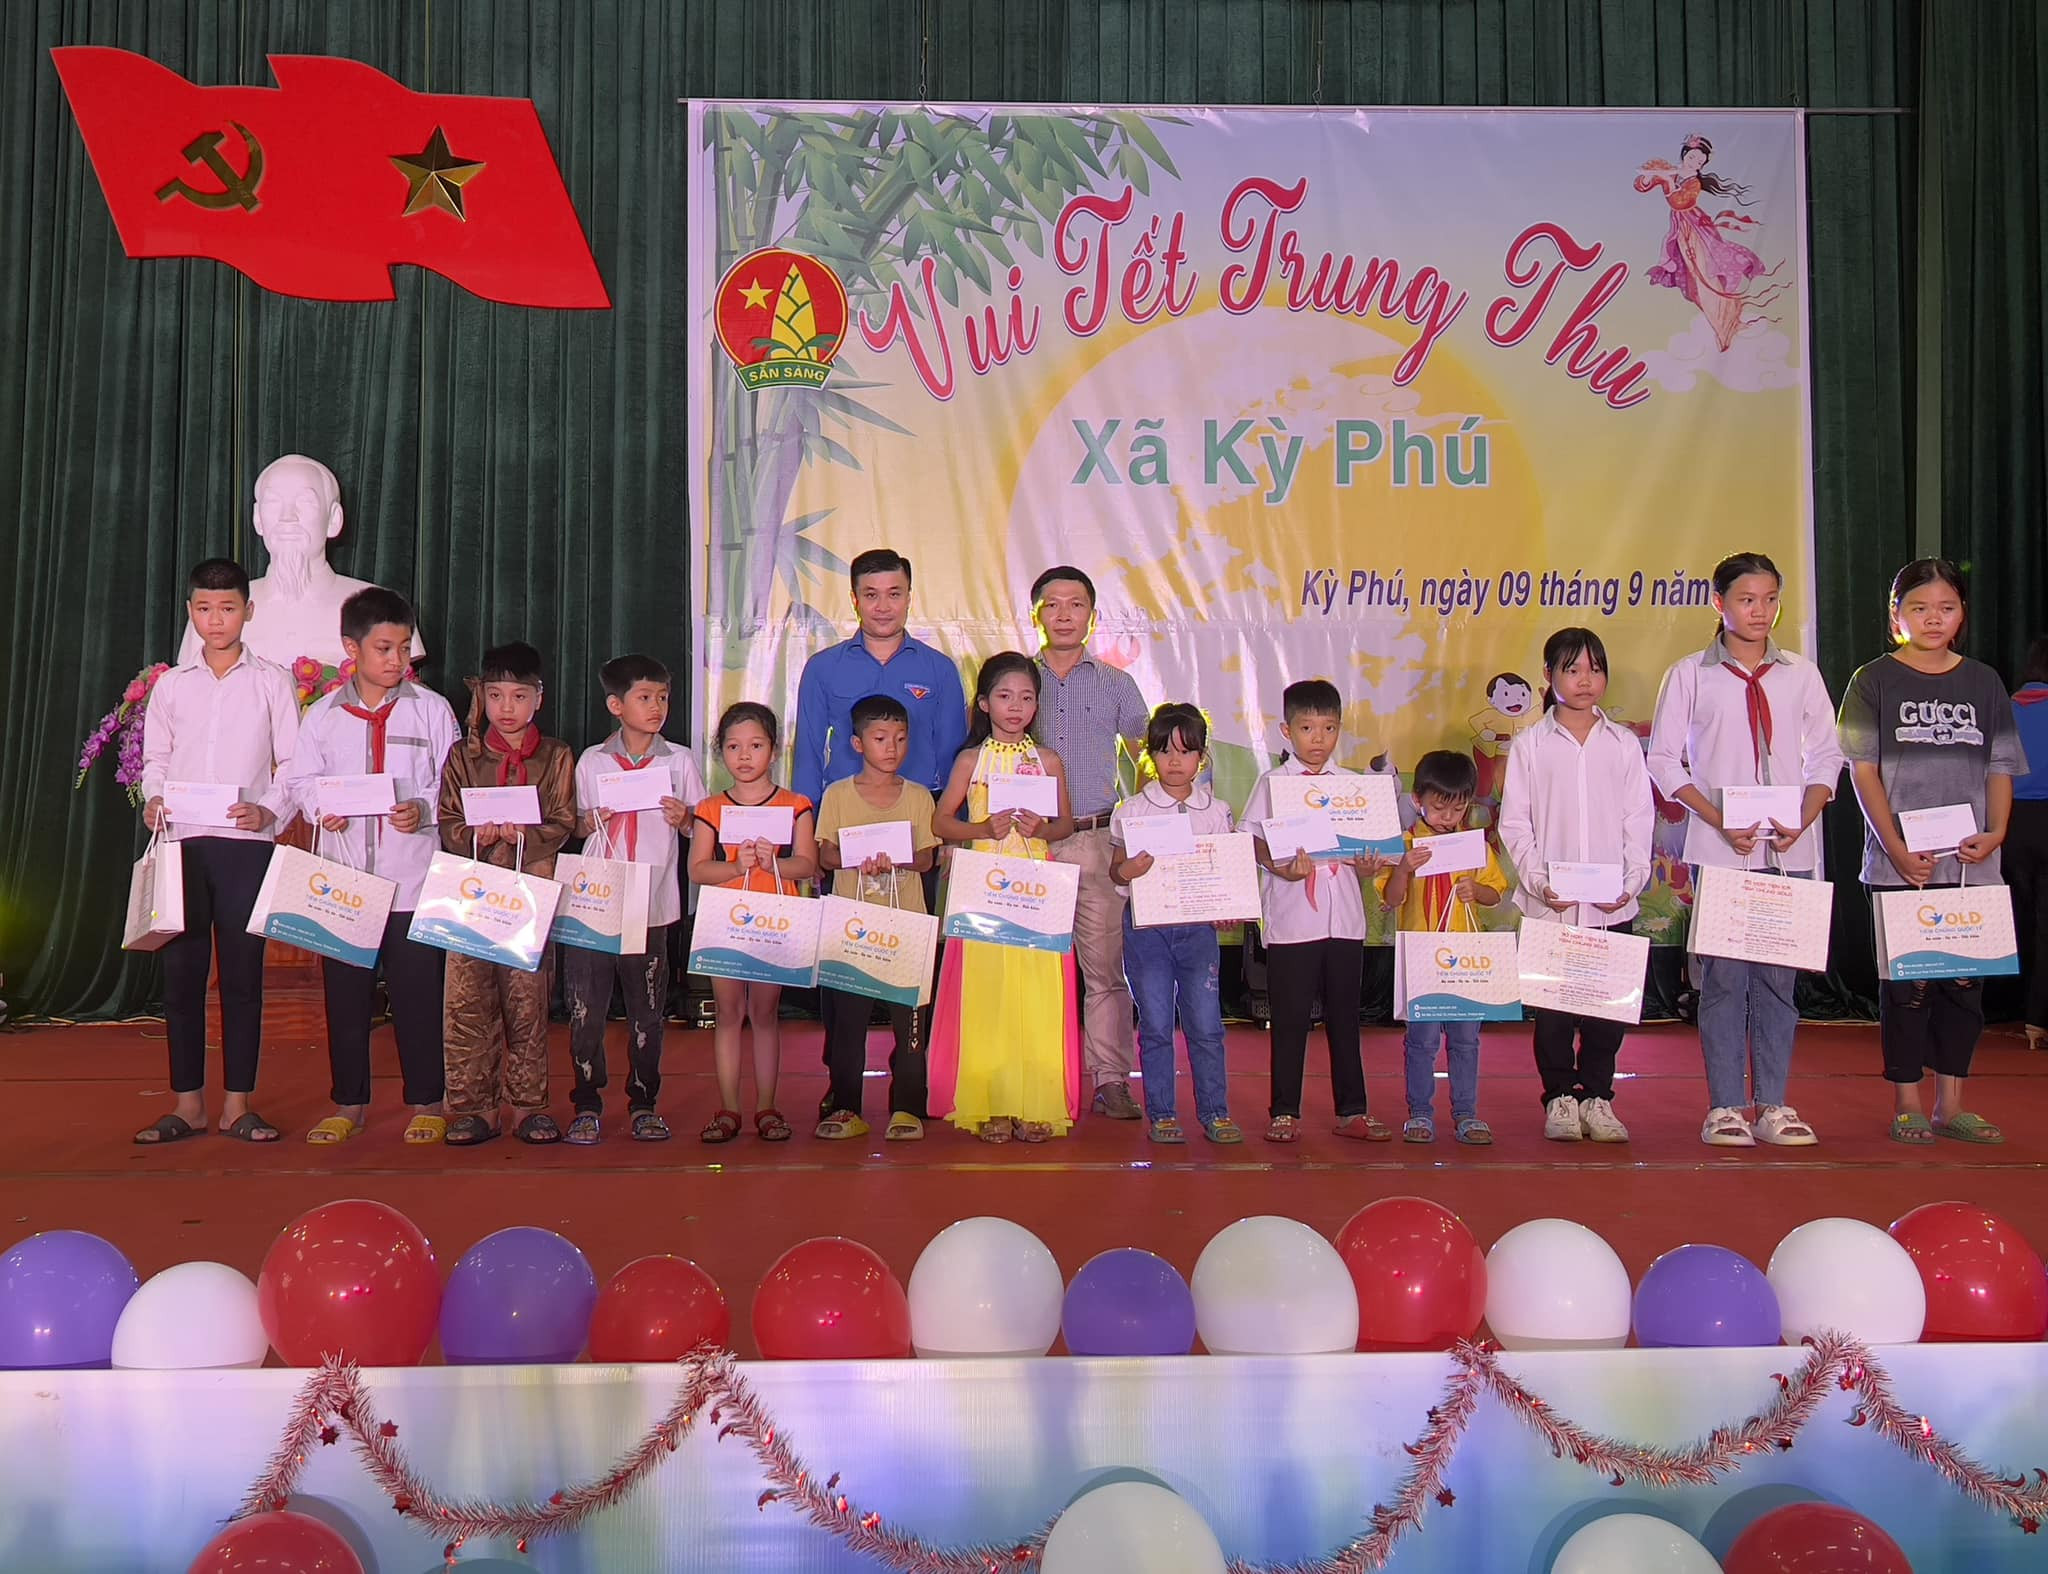 Tỉnh đoàn Ninh Bình tặng quà cho thiếu nhi có hoàn cảnh khó khăn bị ảnh hưởng bởi dịch Covid-19 tại xã Kỳ Phú, huyện Nho Quan